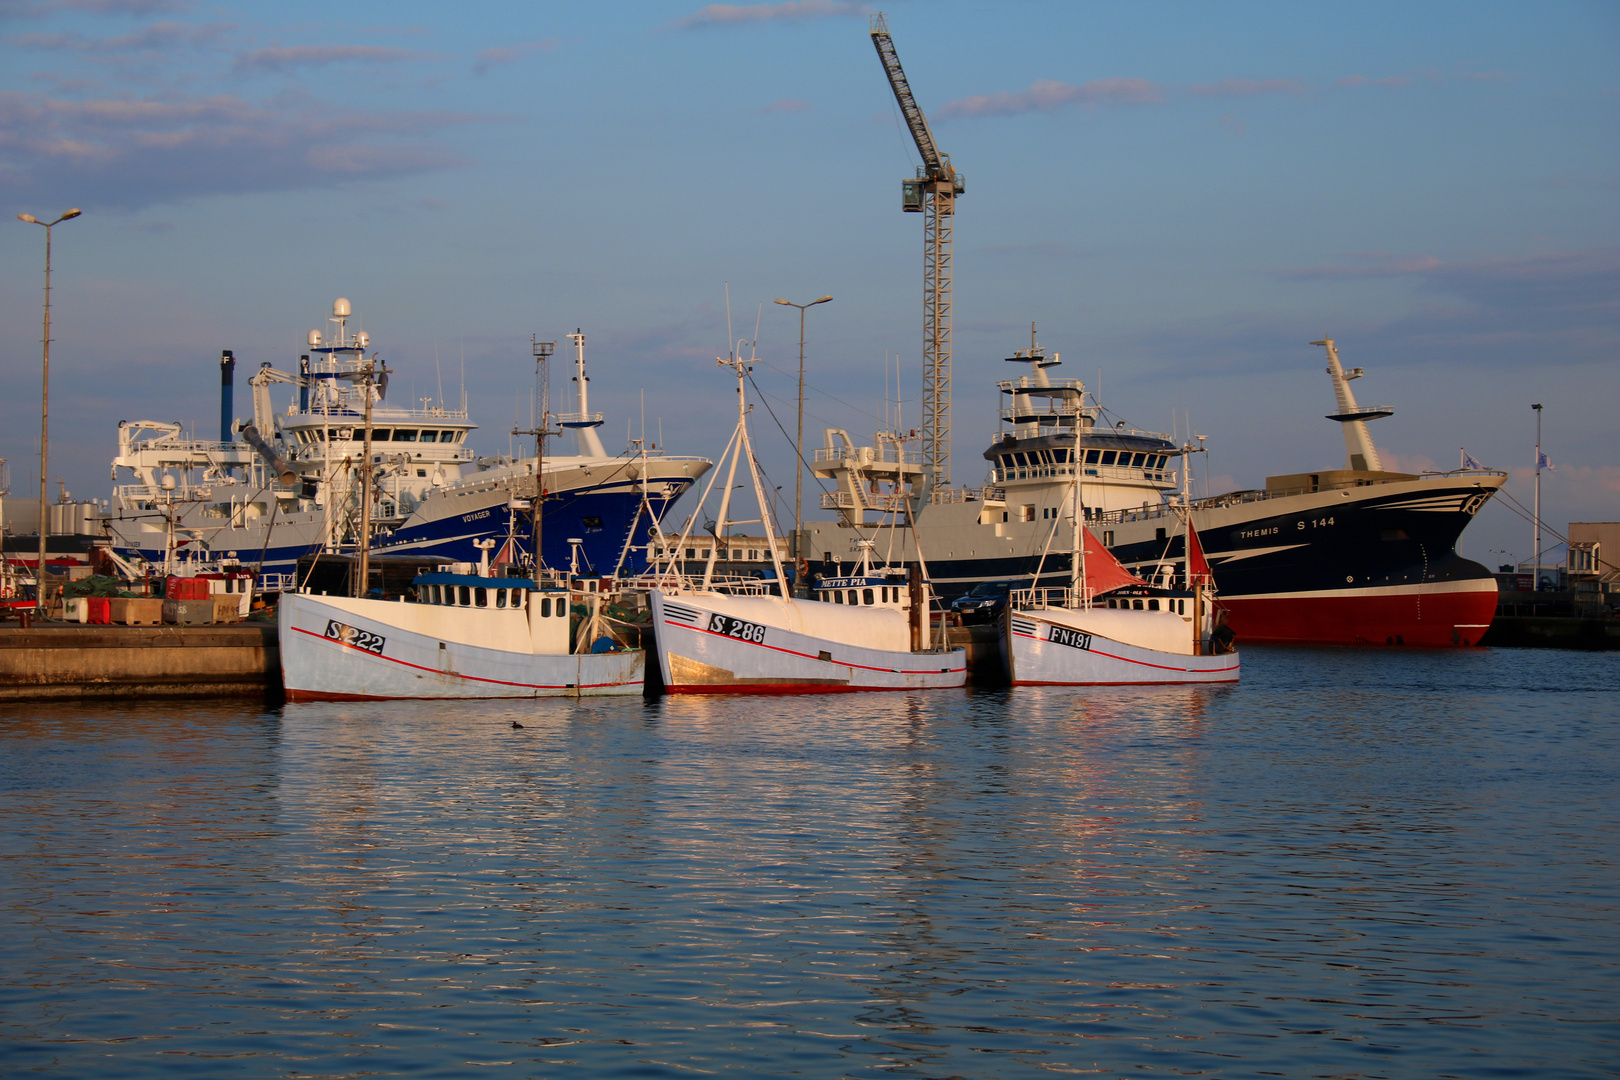 Skagen, Fischereihafen (2)